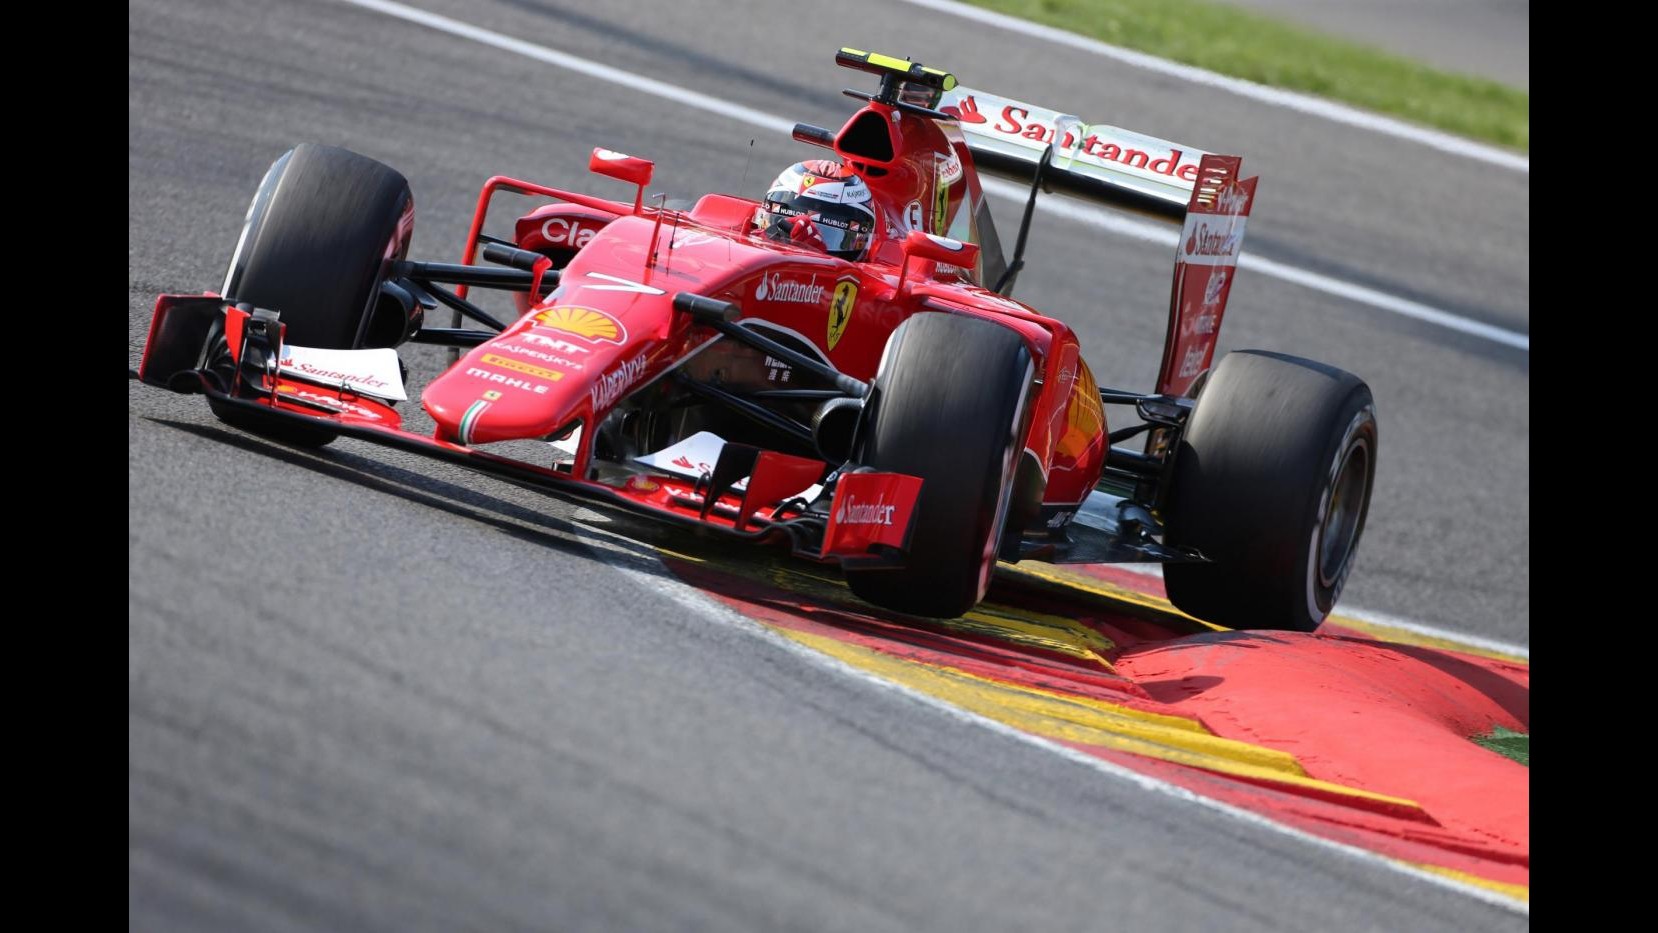 F1, Gp Belgio, Raikkonen partirà 16° per sostituzione cambio